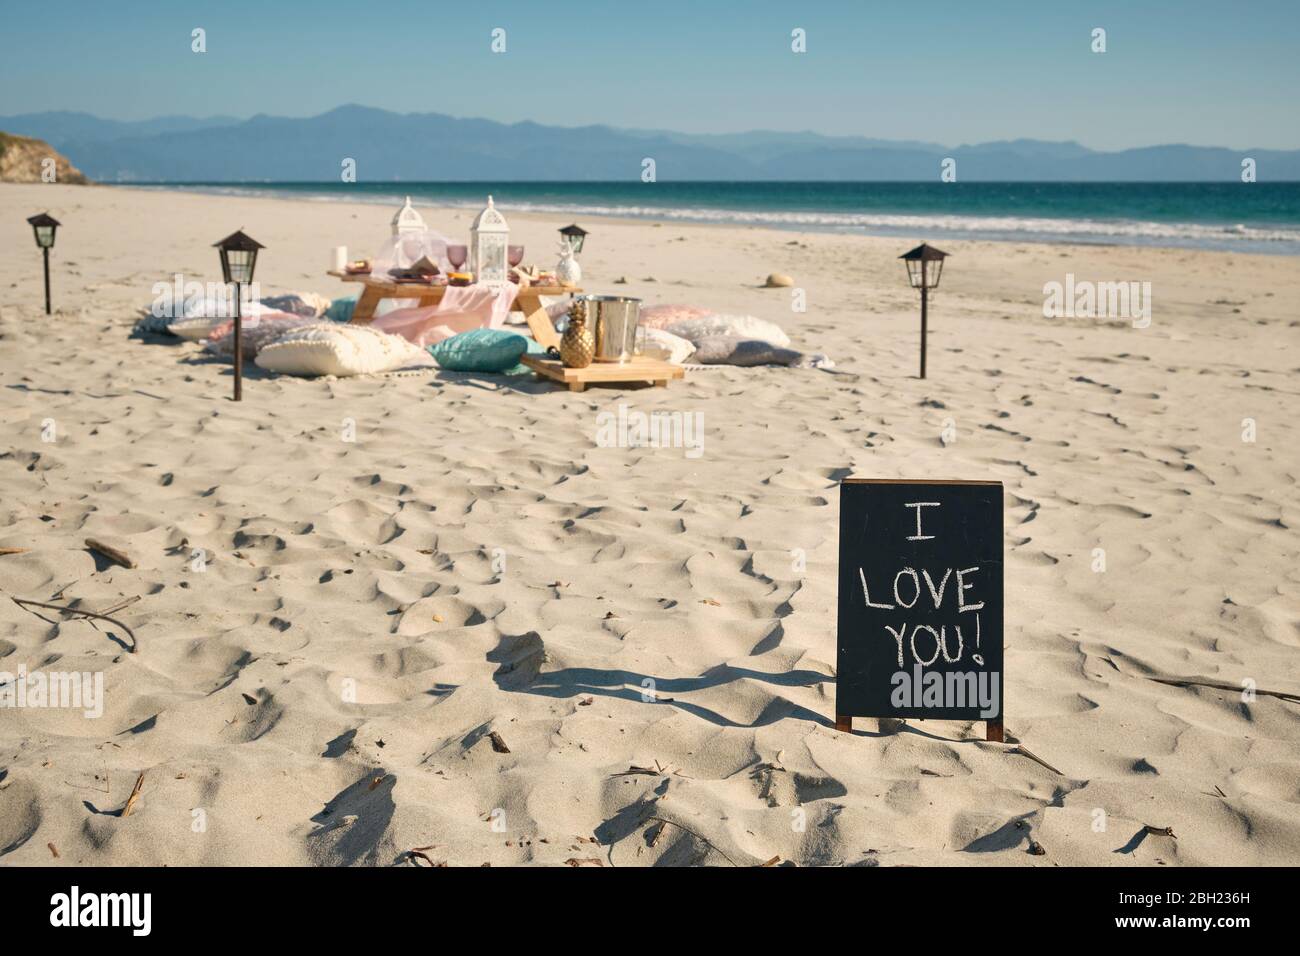 Ich LIEBE ES, DASS SIE an sonnigen Tagen, Nayarit, Mexiko, auf einem Schild neben dem Esstisch am Strand gegen den klaren blauen Himmel unterschreiben Stockfoto